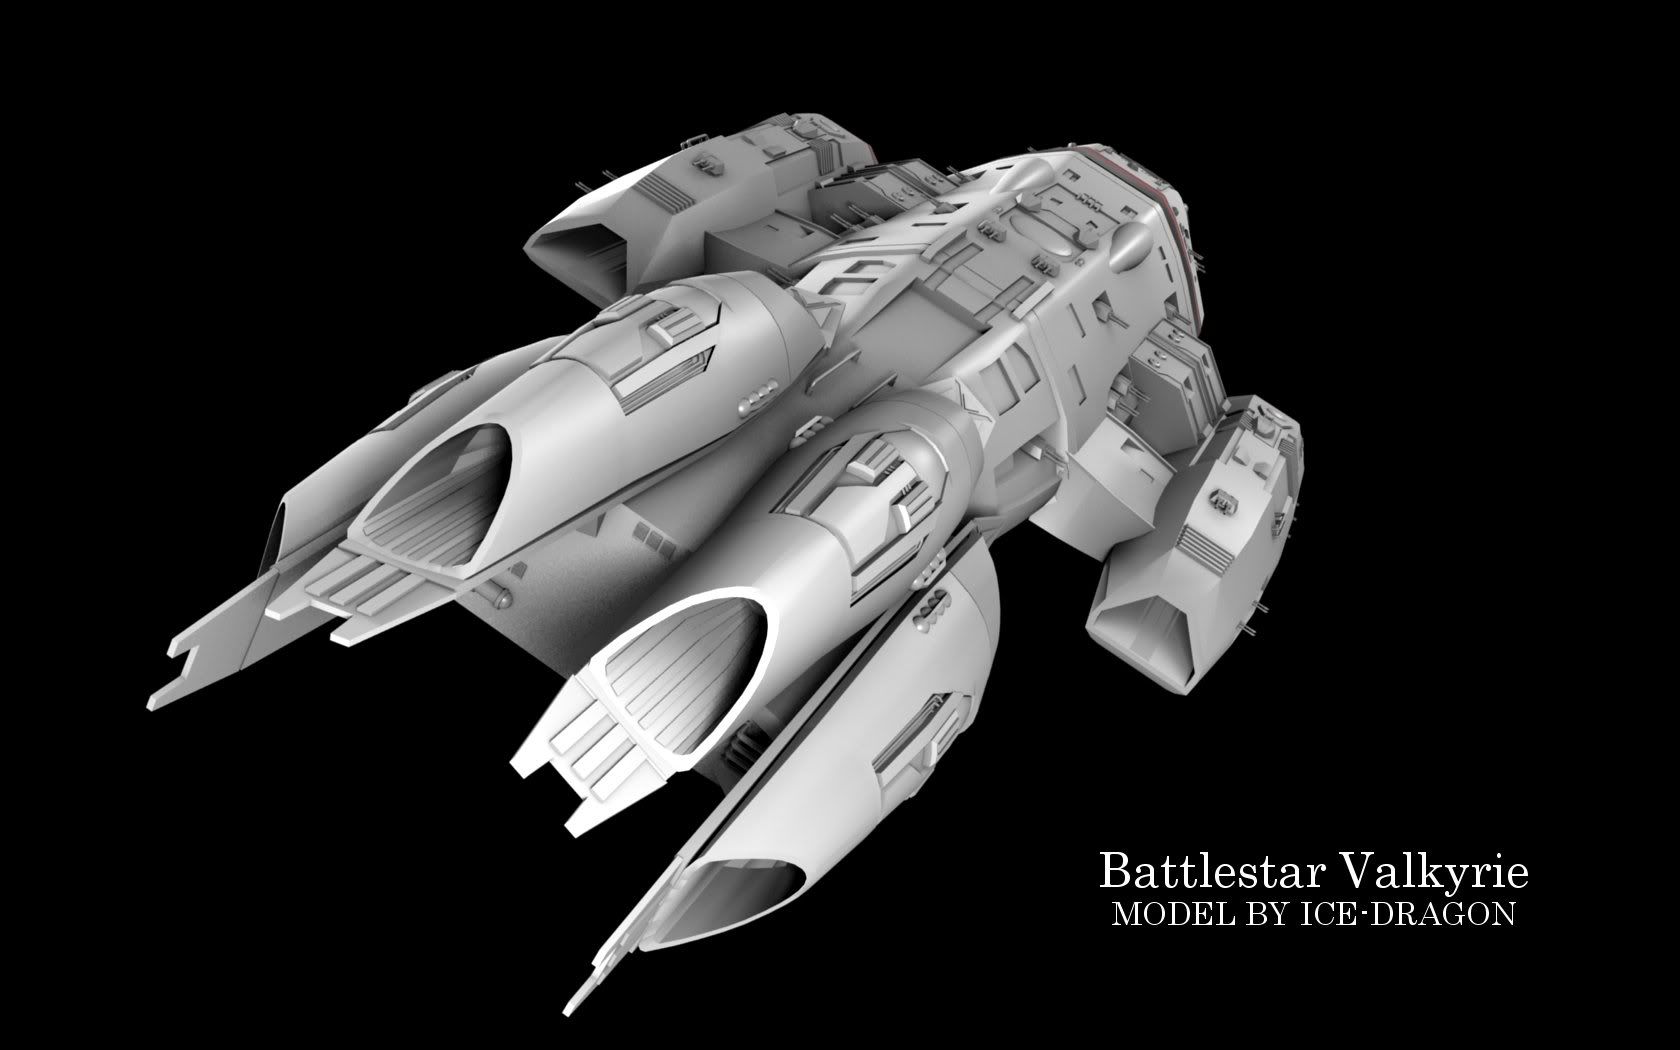 Battlestar Galactica Valkyrie